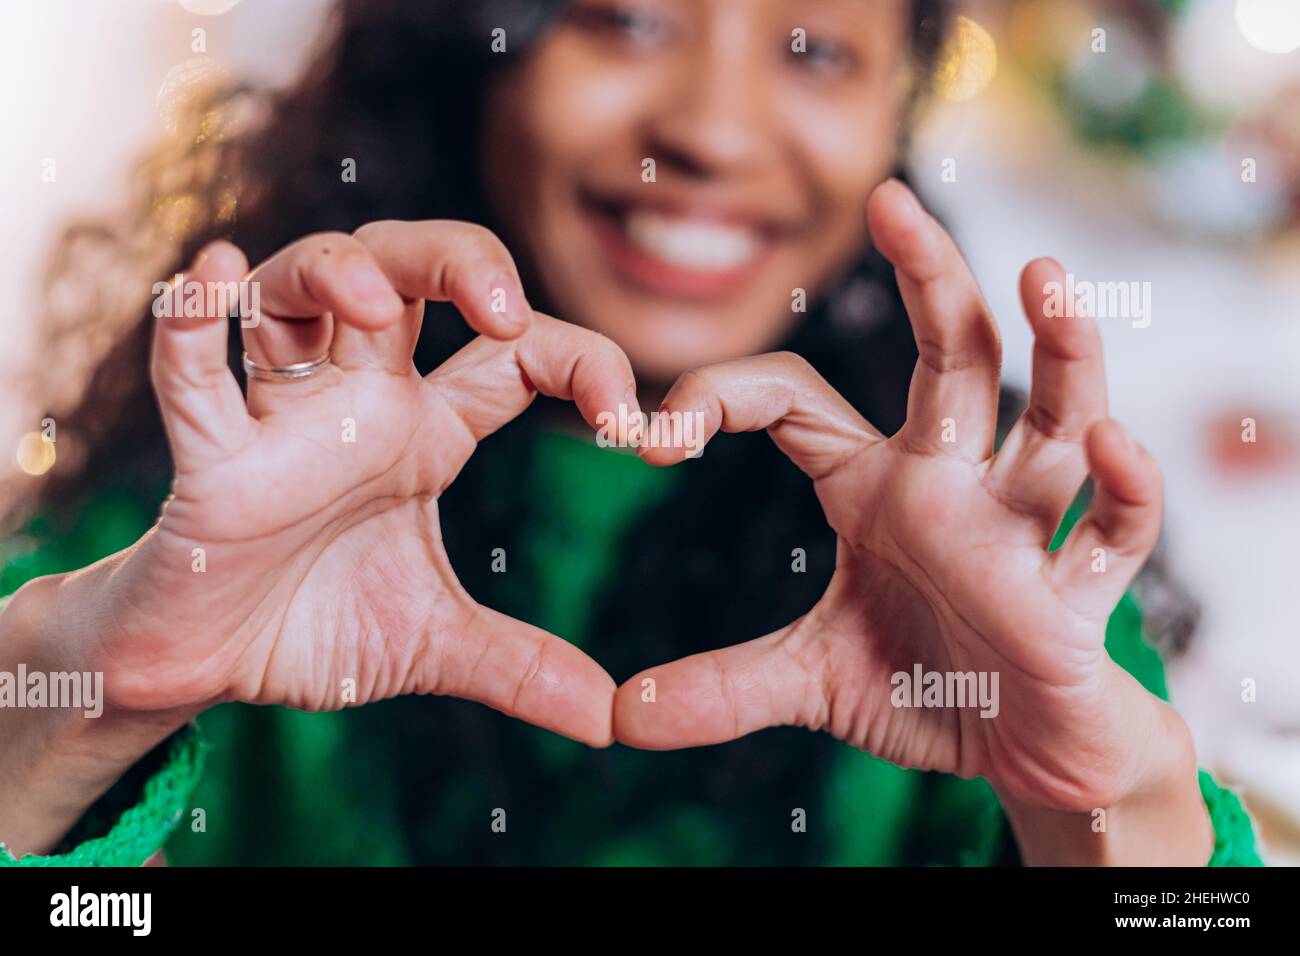 La hija morena de pelo largo y la madre afroamericana se sientan y posan mostrando corazones con los dedos contra las decoraciones navideñas Foto de stock